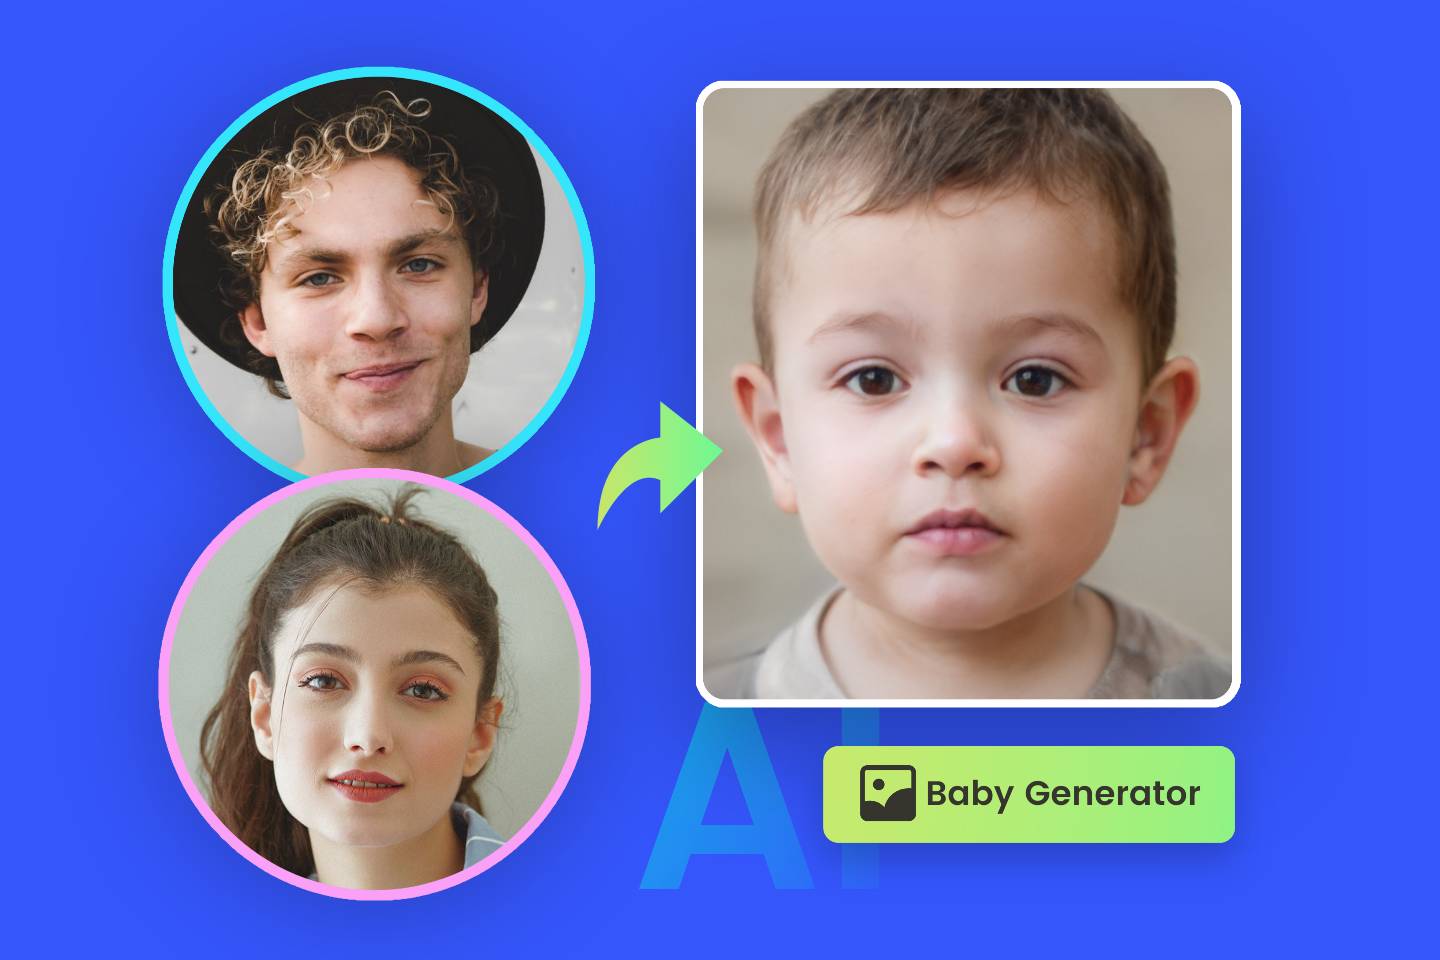 Fotorの子供の顔予想機能で女性と男性のふたりの顔を合成して将来の子供の顔を生成します